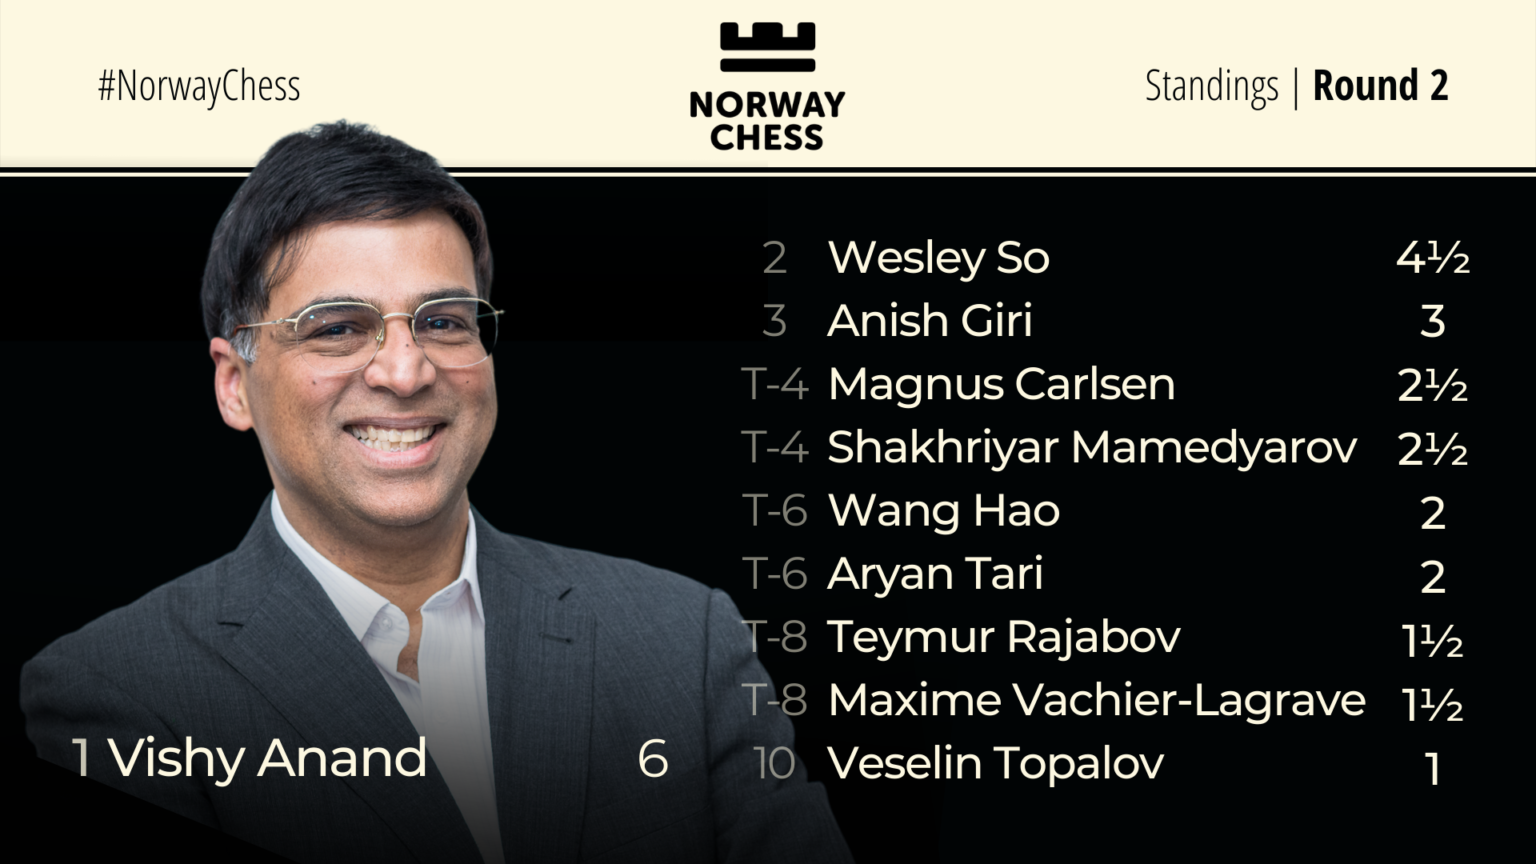 Norway Chess Standings Round 2